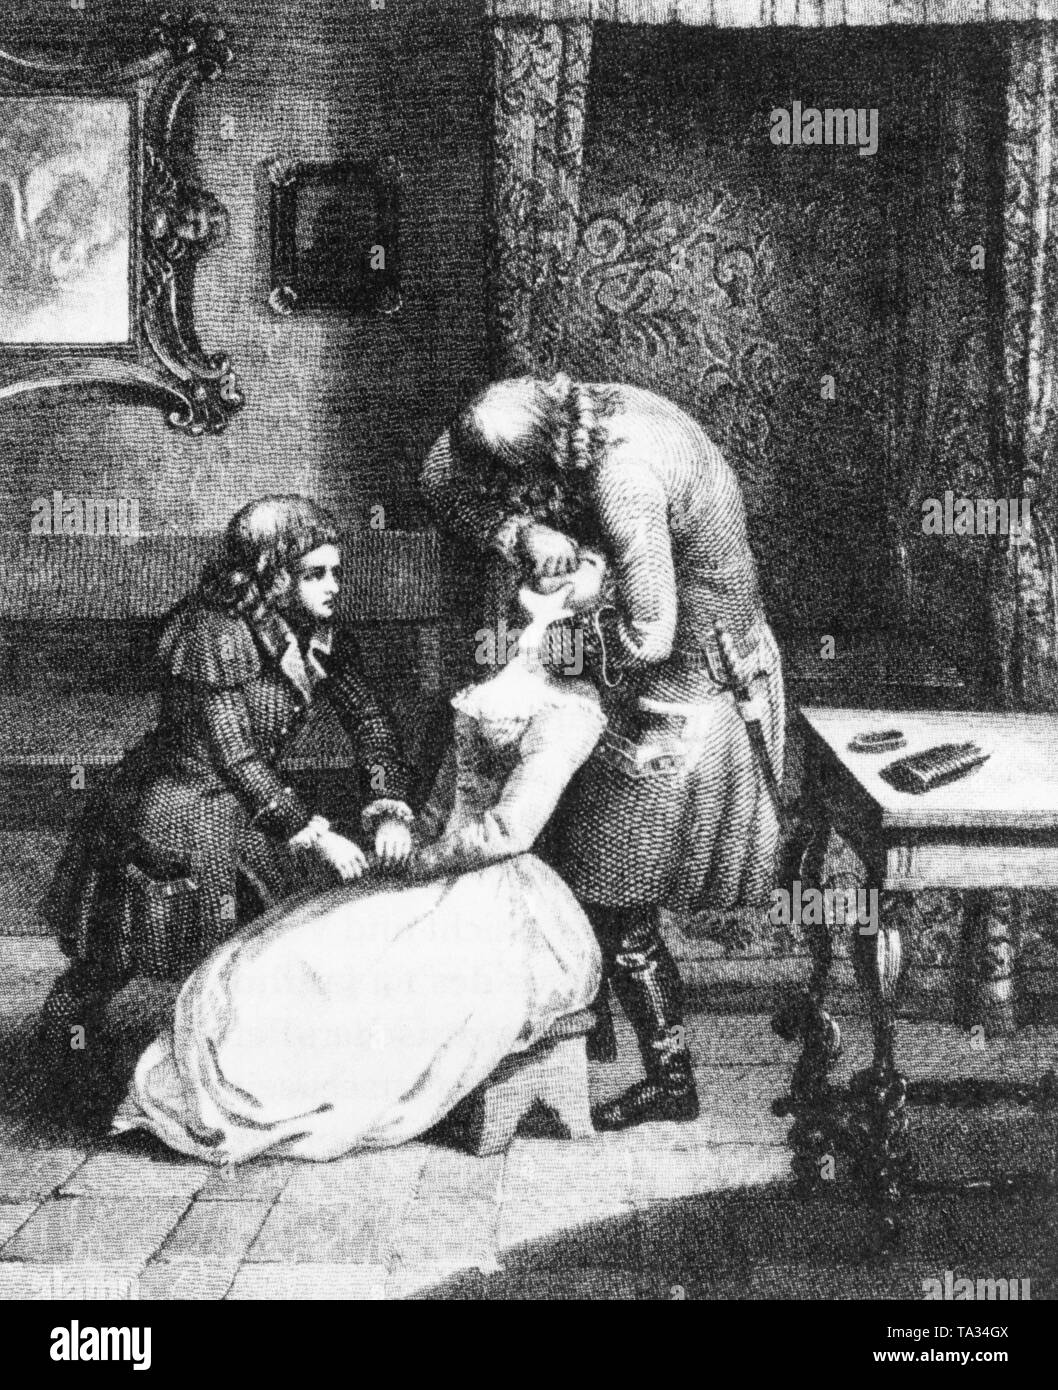 Zar russo Pietro il Grande l'estrazione di un dente. Foto non datata, intorno al 1700. Foto Stock